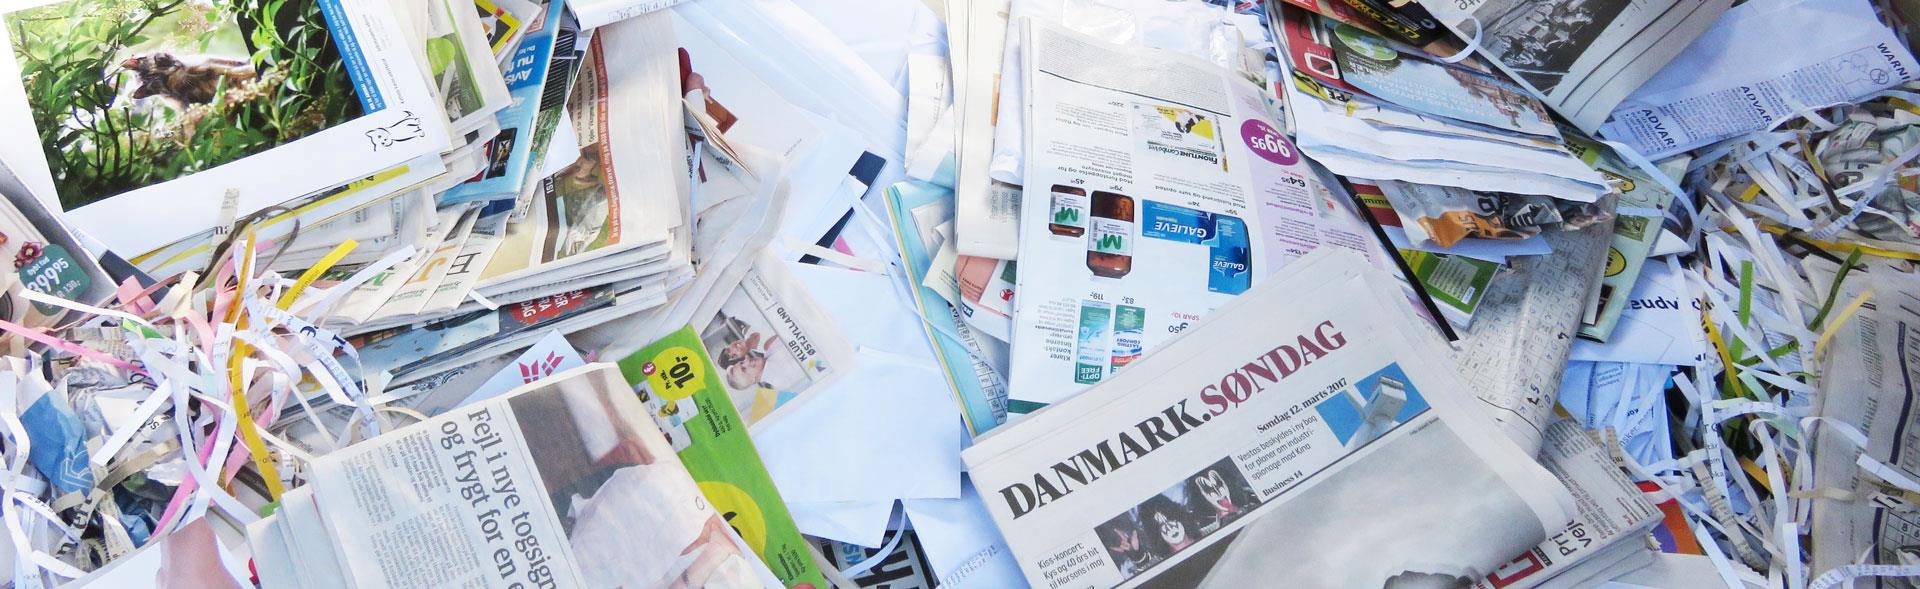 Aviser og papir i en stor bunke